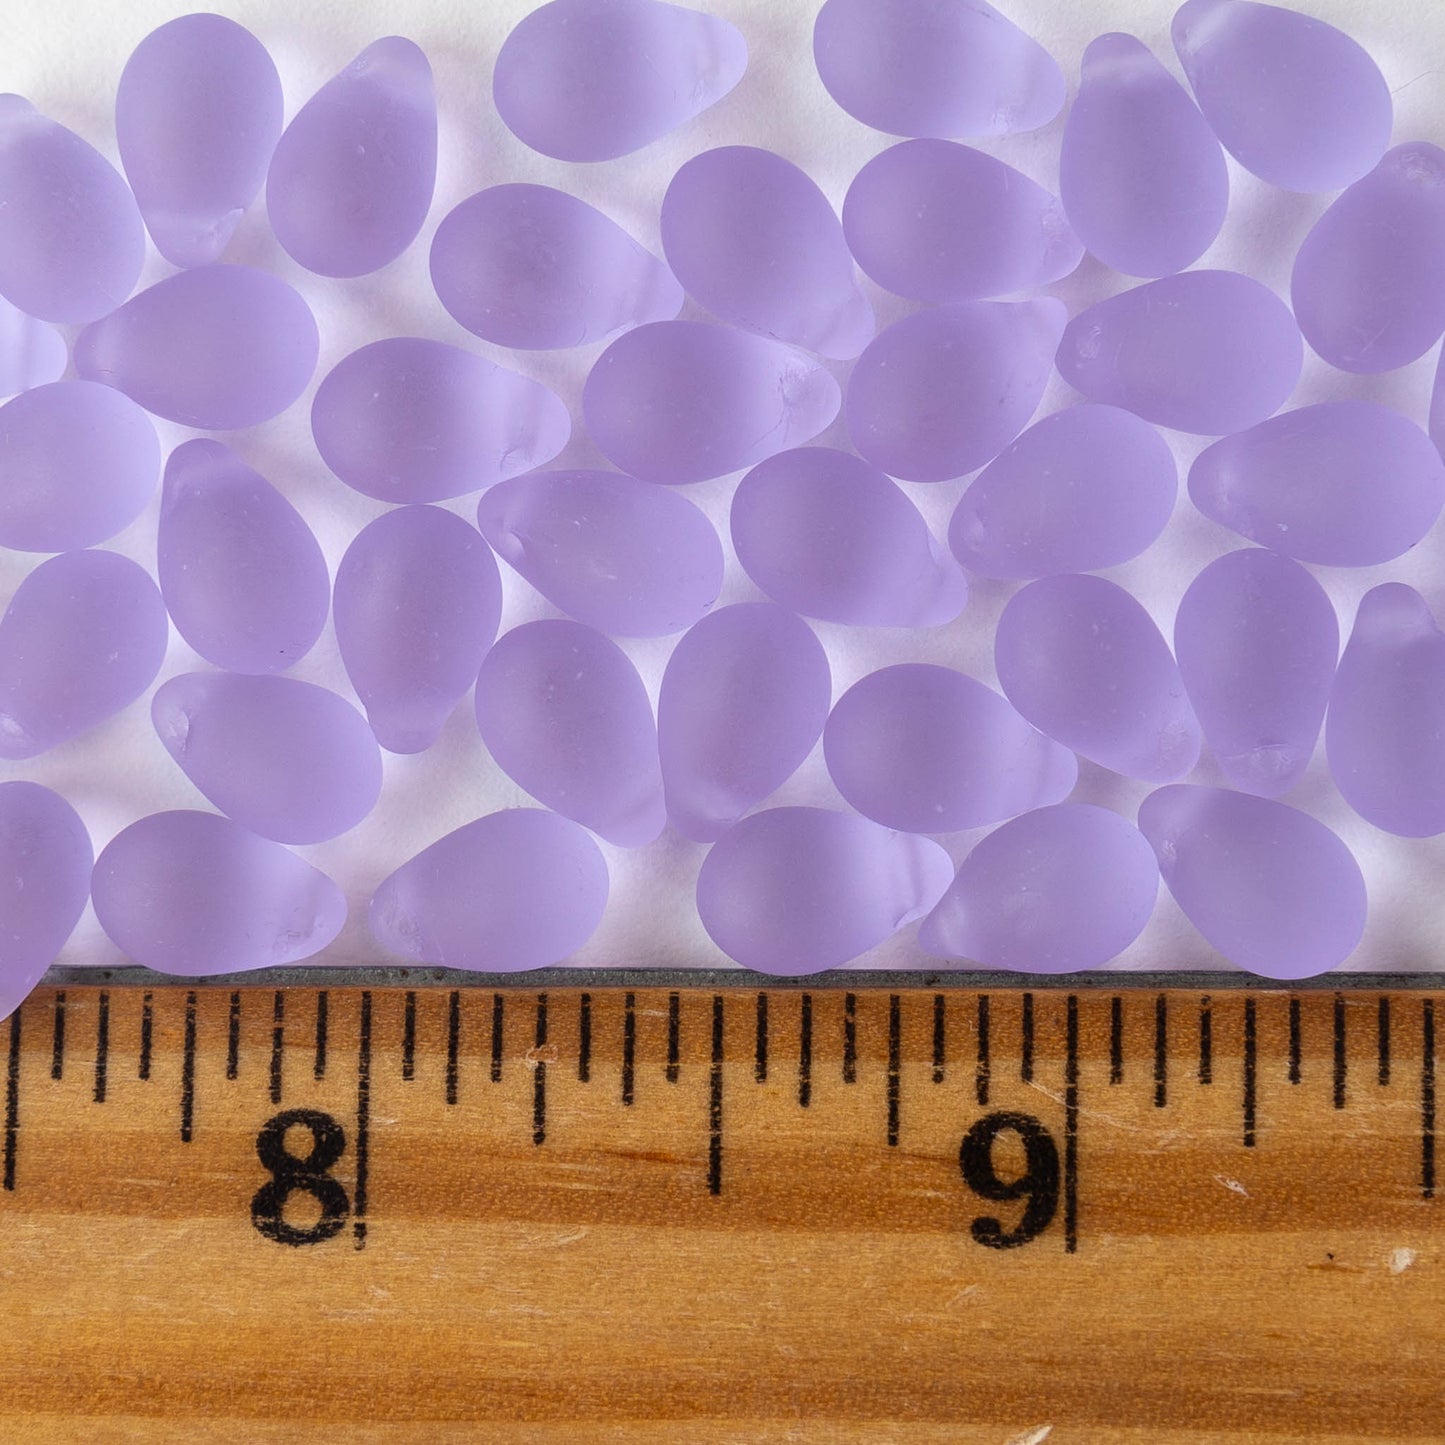 6x9mm Glass Teardrop Beads - Matte Lilac - 25 Beads